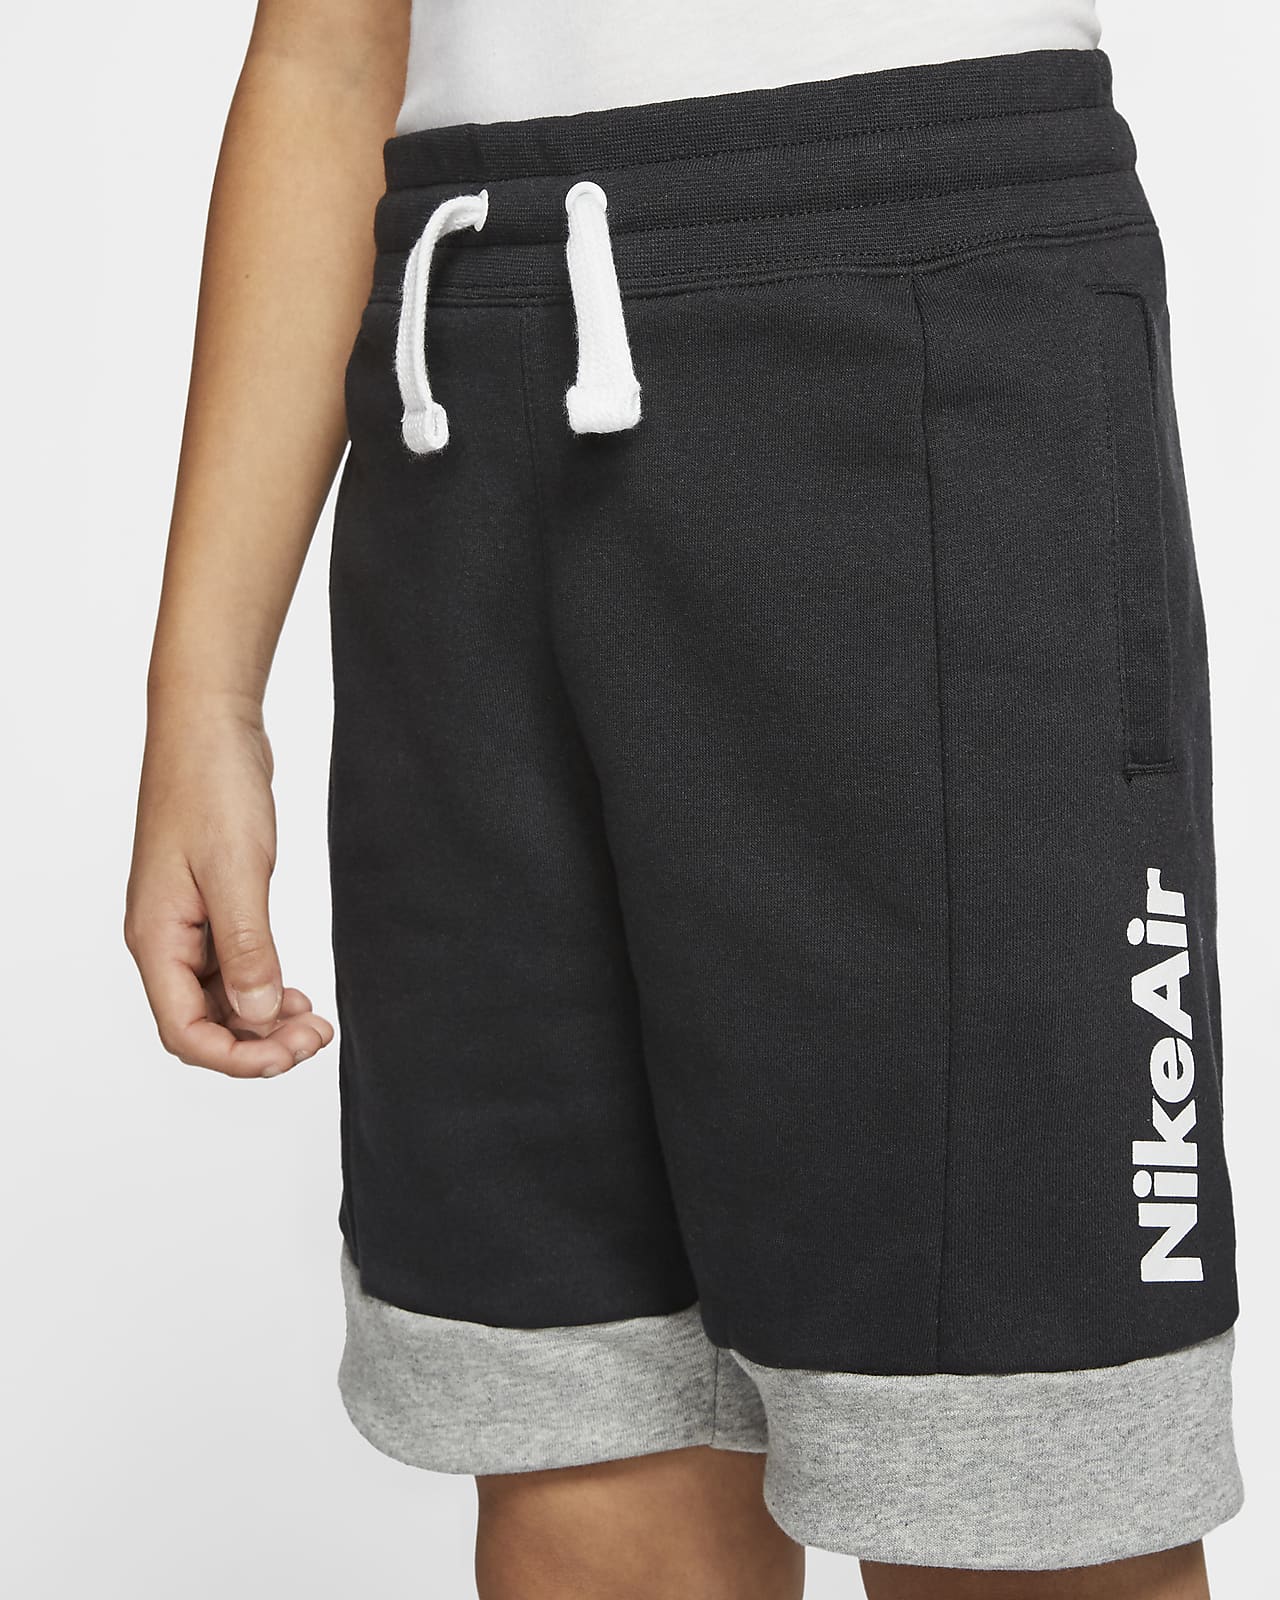 nike air boys shorts